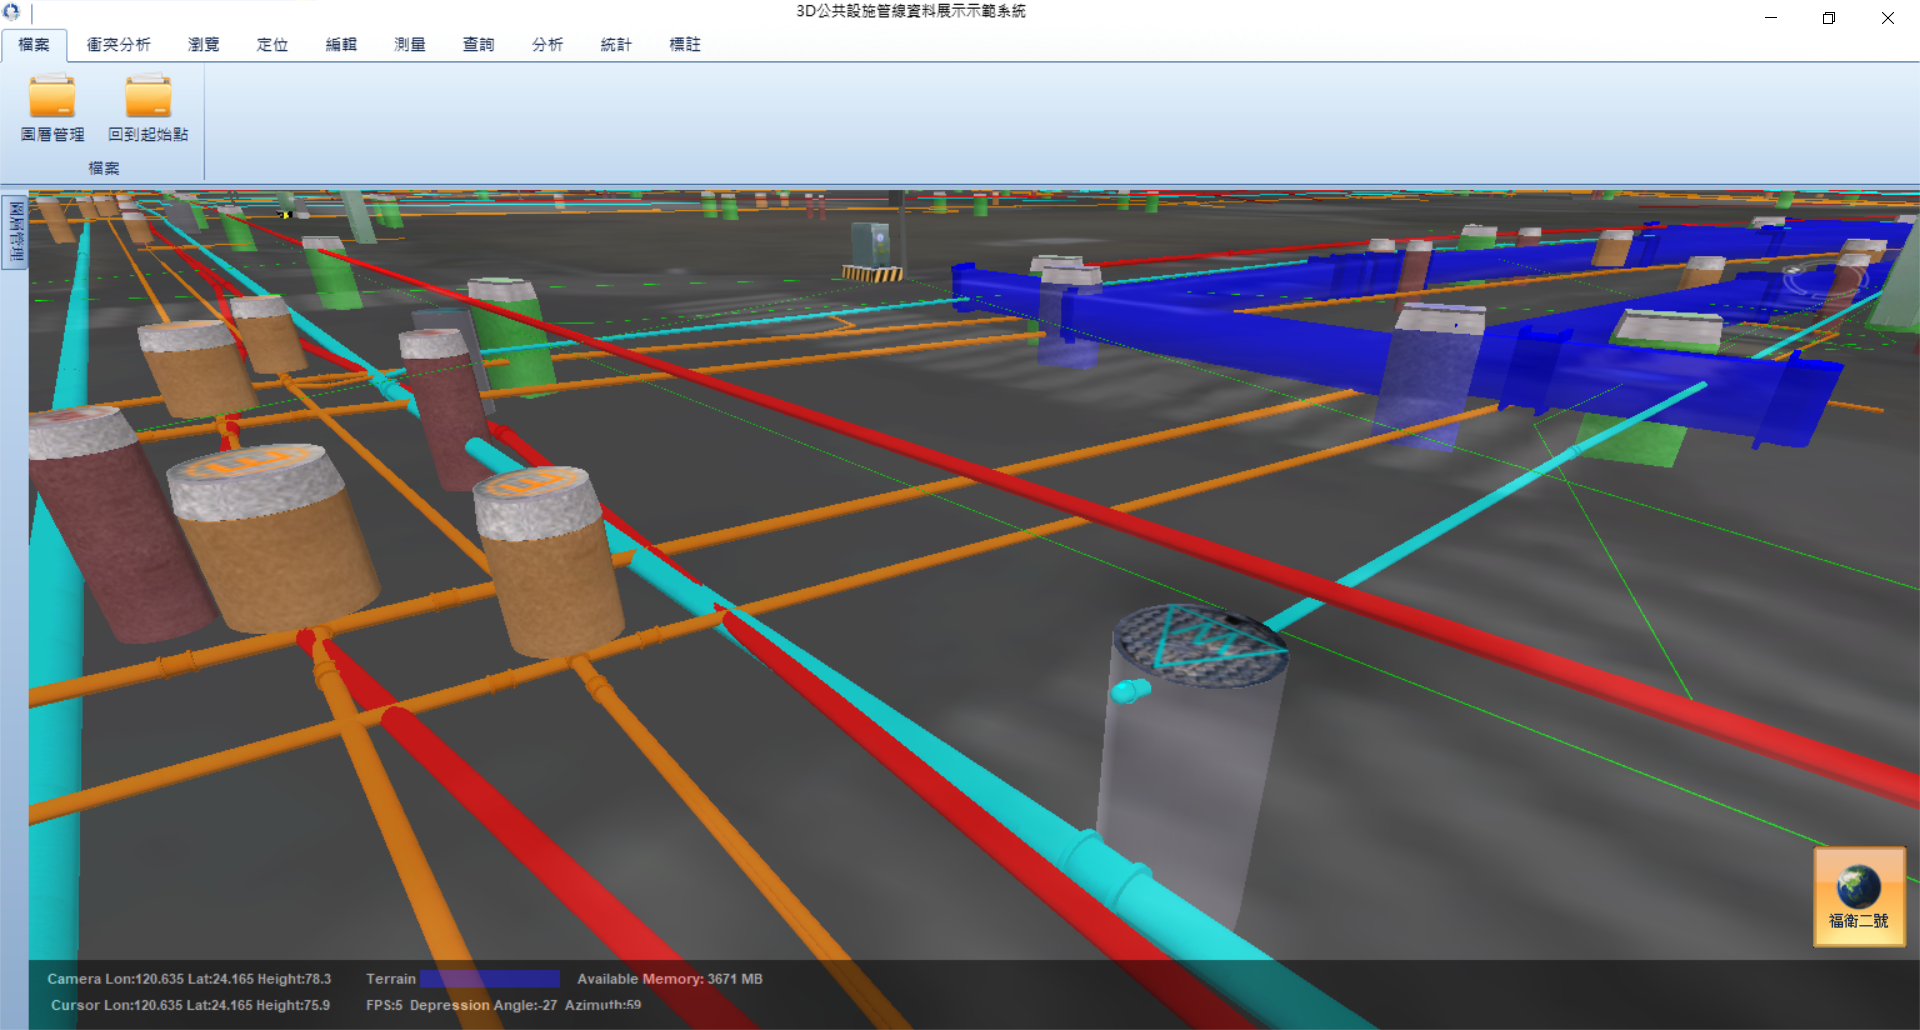 中市府管線圖資2D升級3D 降低管挖公安意外